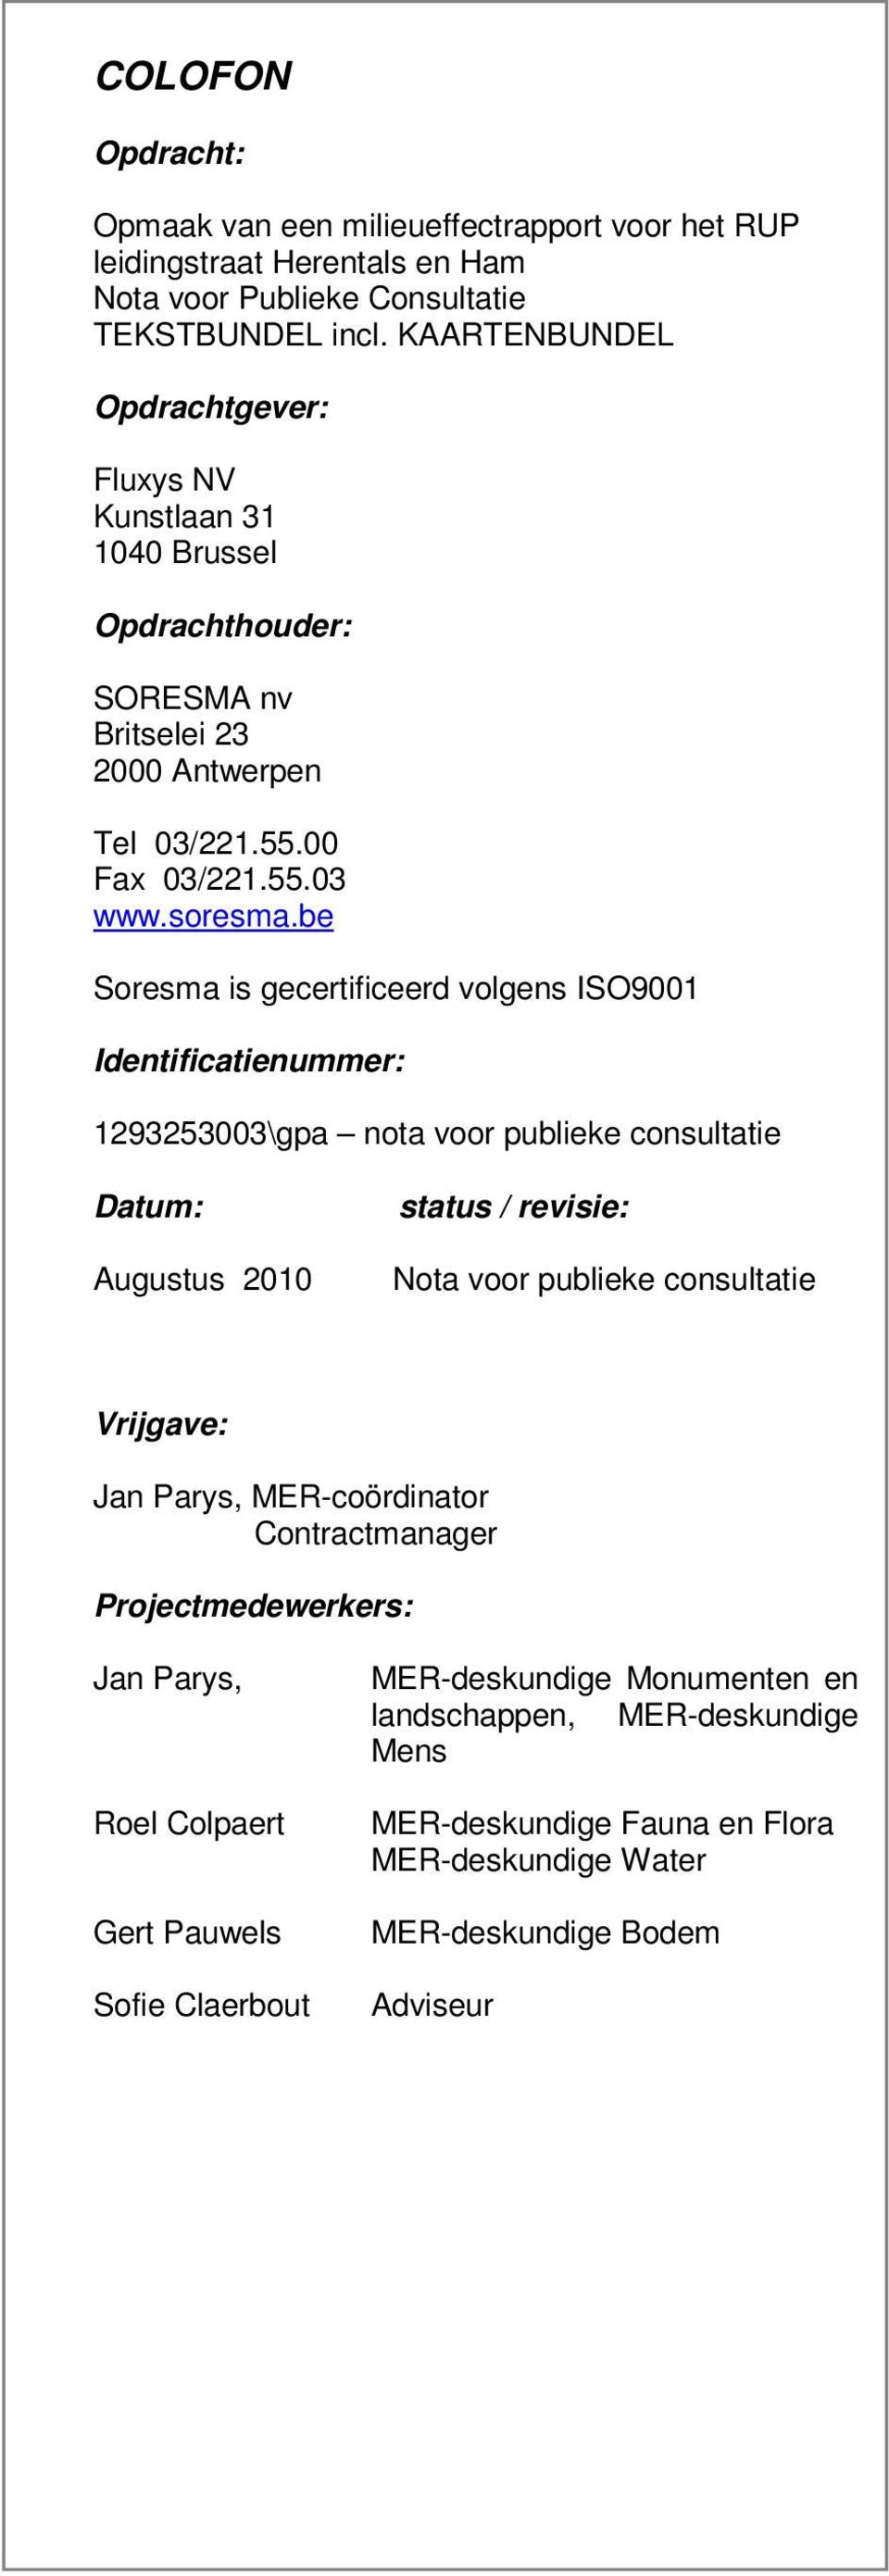 be Soresma is gecertificeerd volgens ISO9001 Identificatienummer: 1293253003\gpa nota voor publieke consultatie Datum: Augustus 2010 status / revisie: Nota voor publieke consultatie